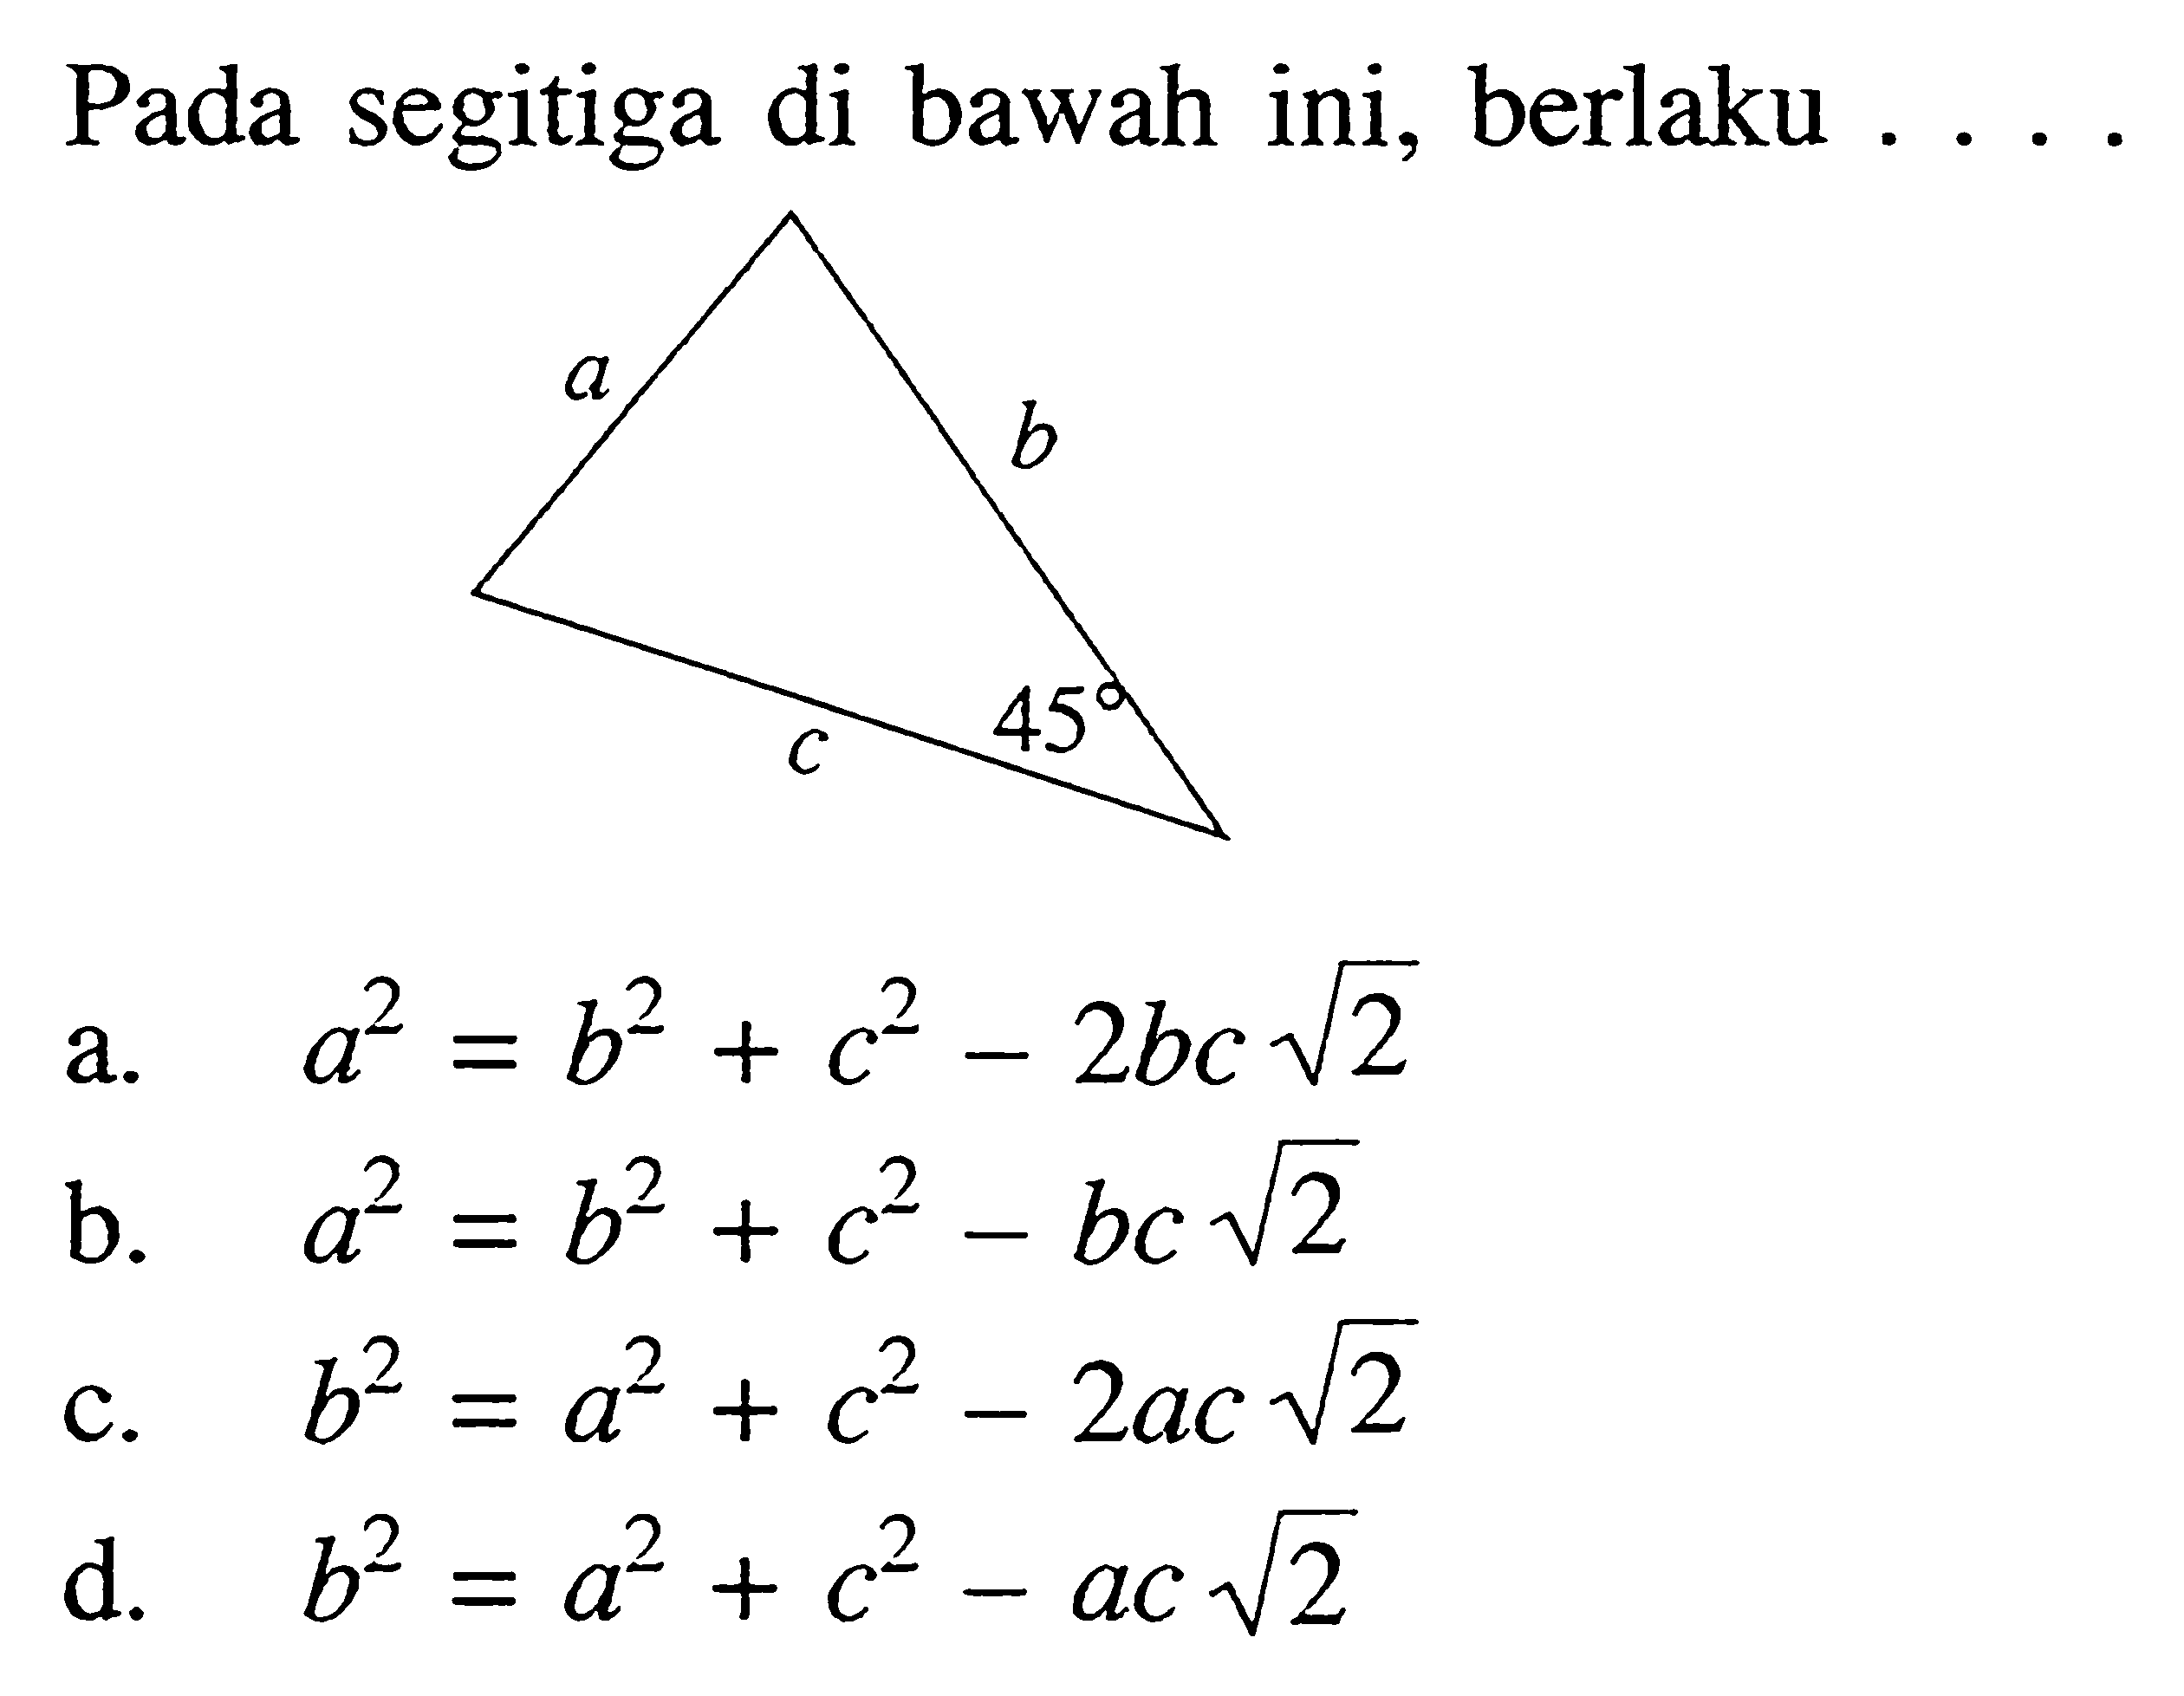 Pada segitiga di bawah ini, berlaku ....a b c 45a. a^2=b^2+c^2-2 bc akar(2) b. a^2=b^2+c^2-bc akar(2) c. b^2=a^2+c^2-2ac akar(2) d.  b^2=a^2+c^2-ac akar(2) 